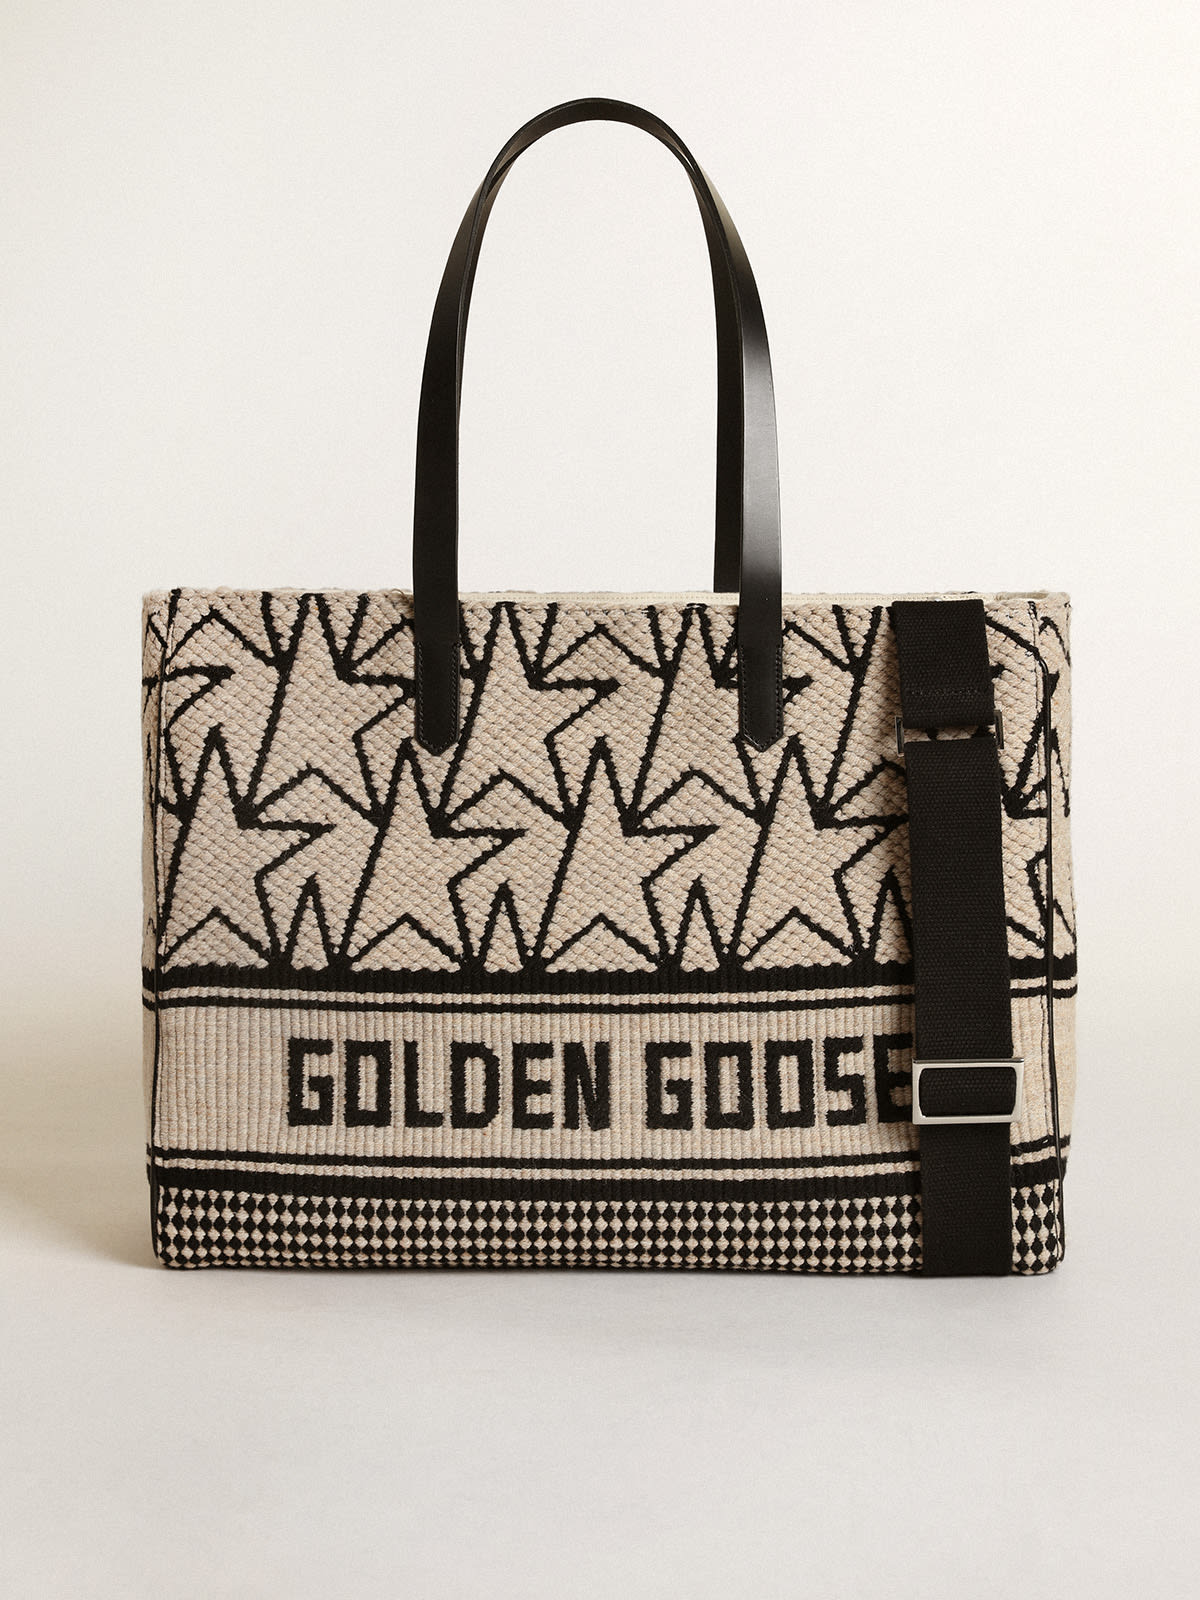 Golden Goose - Borsa California Bag East-West in lana jacquard color bianco latte con monogrammi e scritta Golden Goose di colore nero a contrasto in 